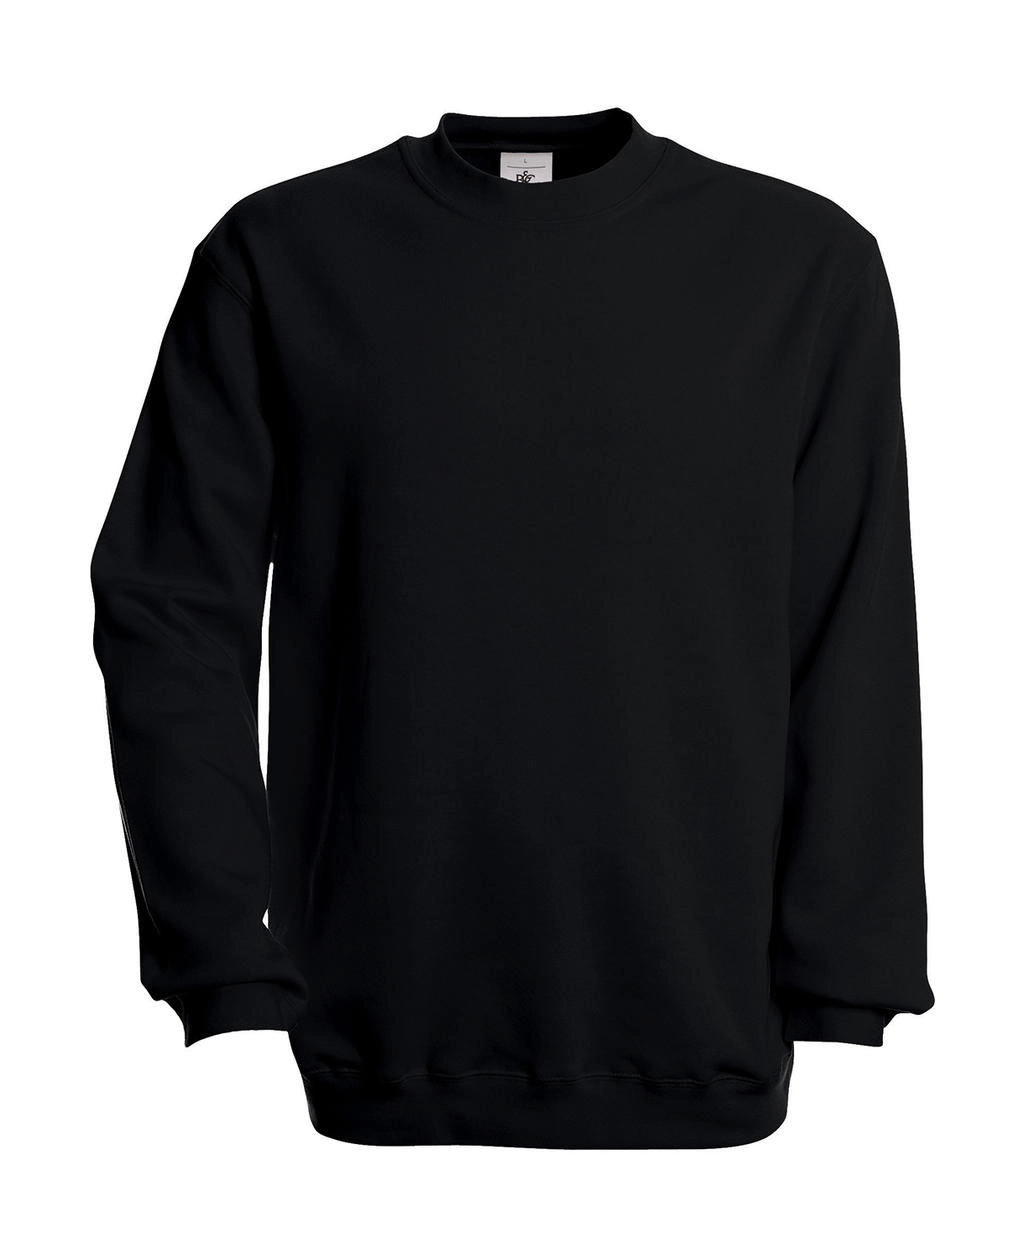 Set In Sweatshirt zum Besticken und Bedrucken in der Farbe Black mit Ihren Logo, Schriftzug oder Motiv.